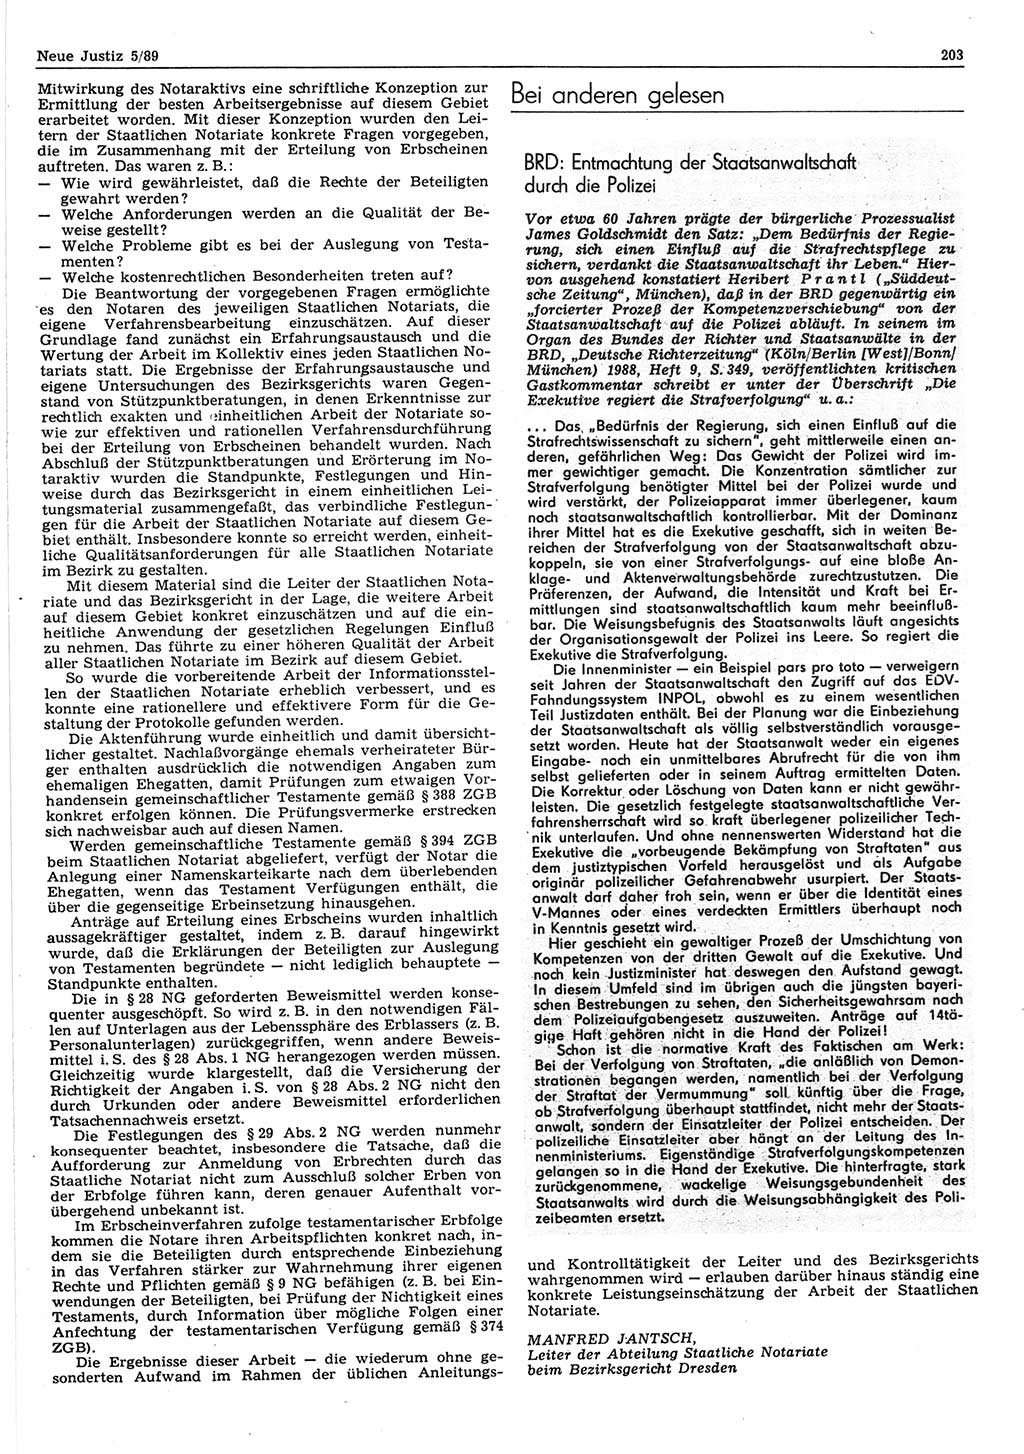 Neue Justiz (NJ), Zeitschrift für sozialistisches Recht und Gesetzlichkeit [Deutsche Demokratische Republik (DDR)], 43. Jahrgang 1989, Seite 203 (NJ DDR 1989, S. 203)